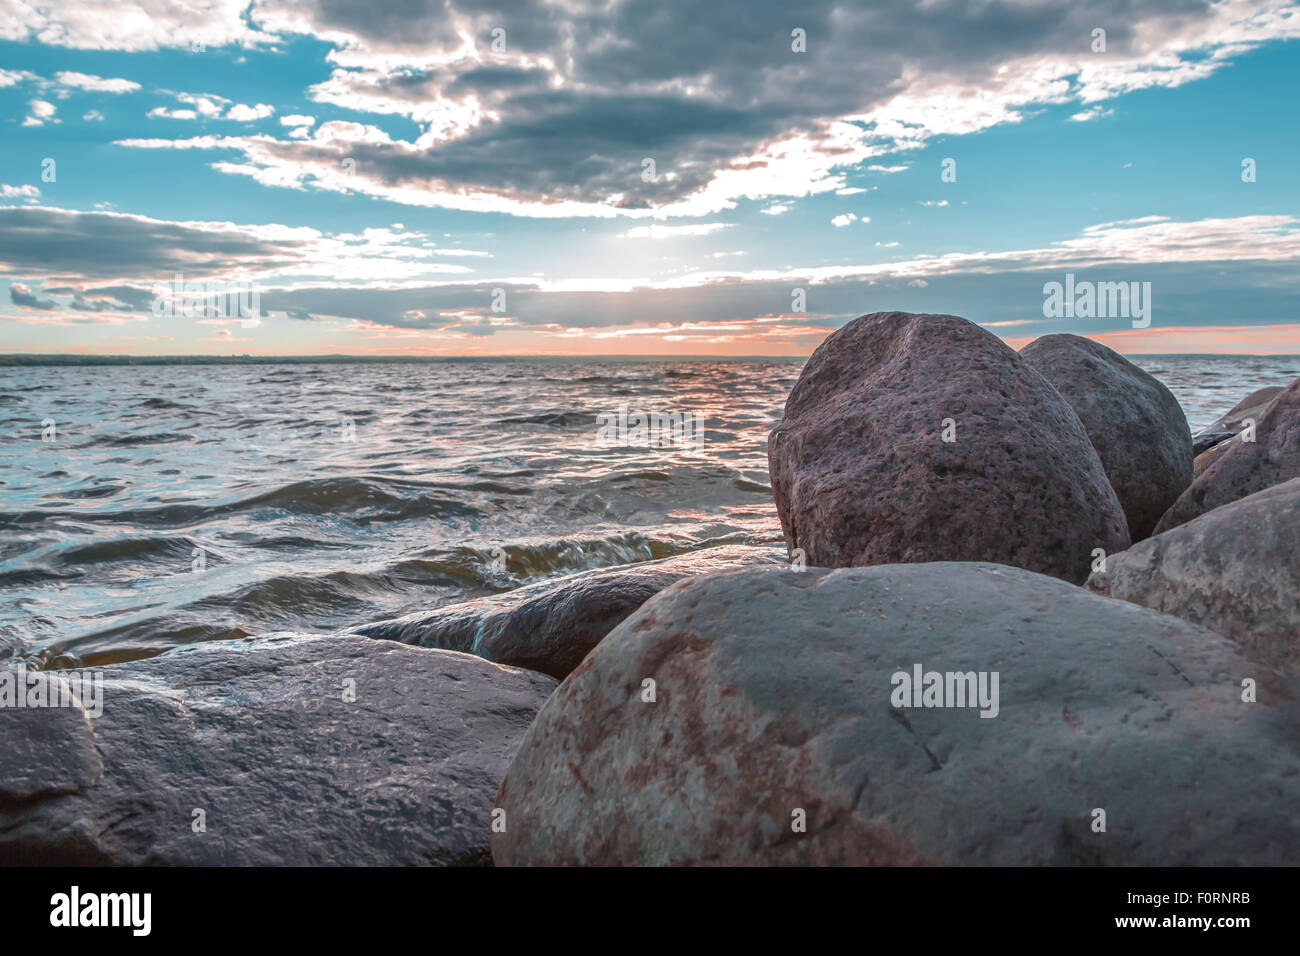 A volte sembra che le pietre costiere hanno un'anima. E la memoria. Foto Stock